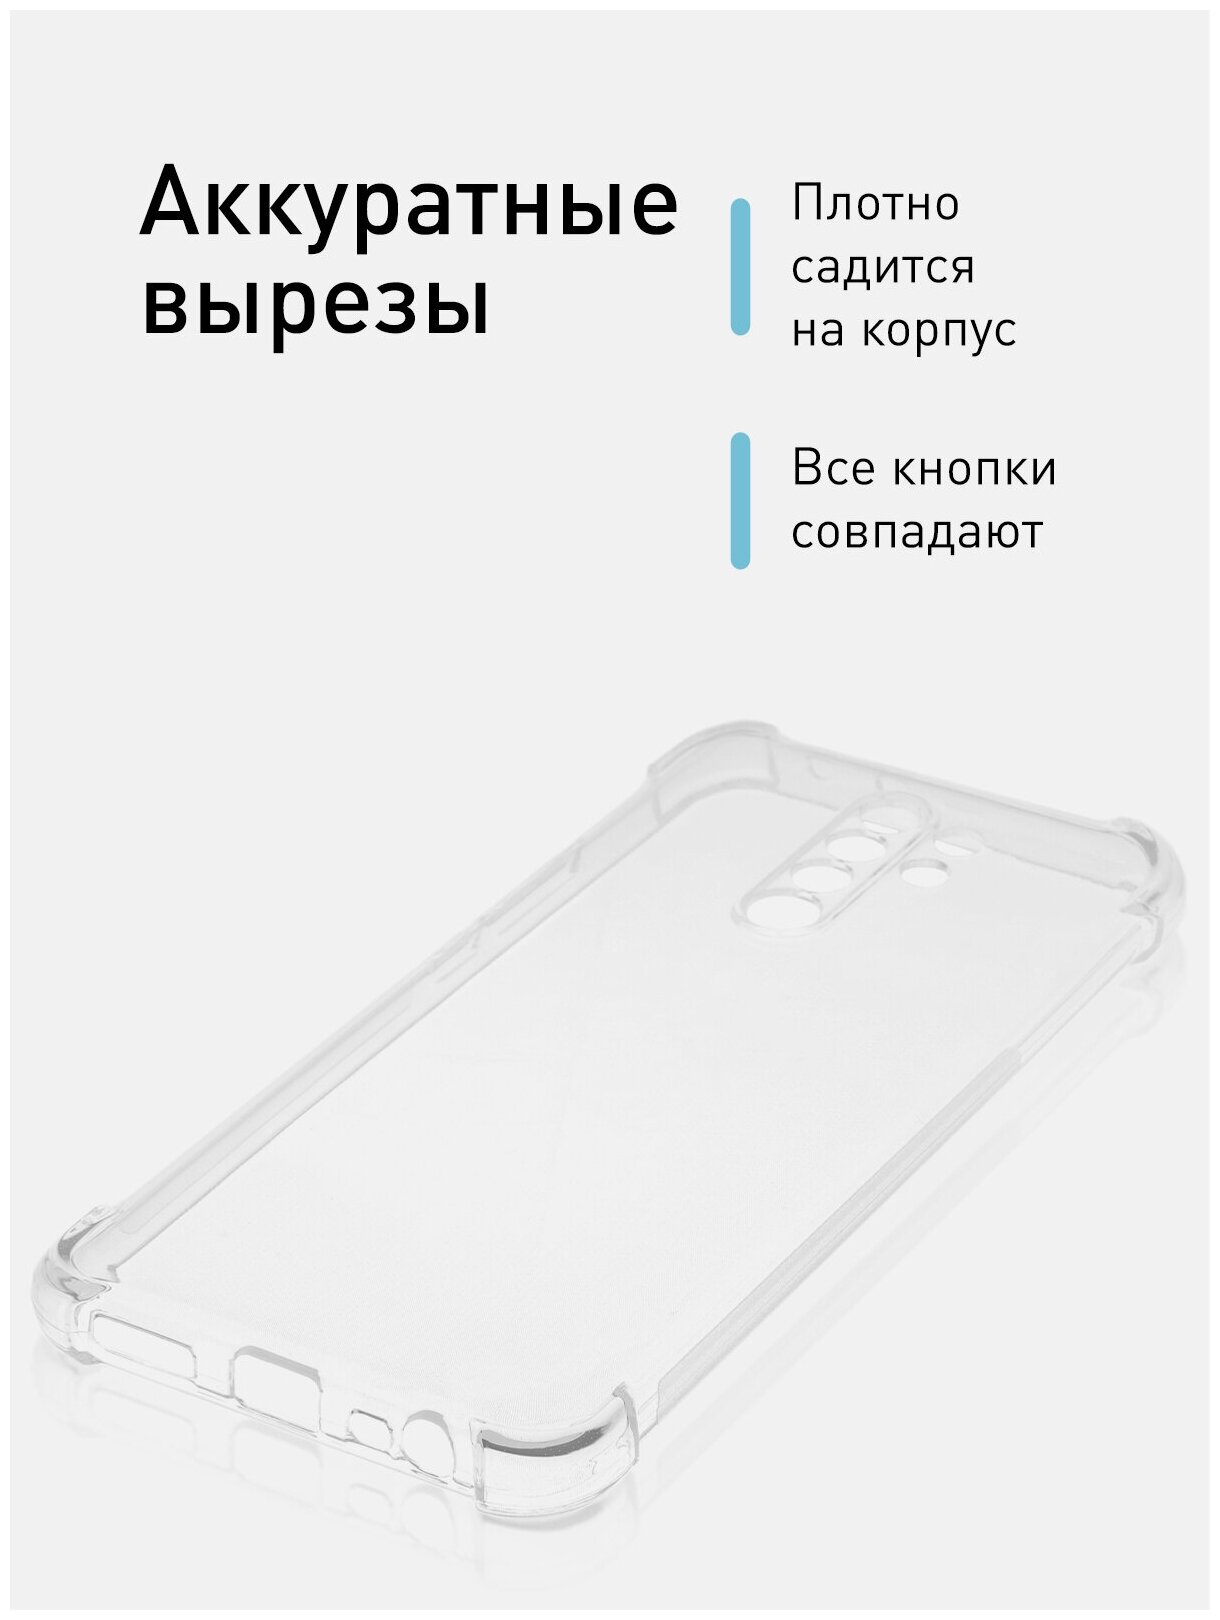 Противоударный чехол -накладка для Xiaomi Redmi 9 (Сяоми Редми 9) силиконовый усиленные углы защита блока камер ROSCO чехол прозрачный